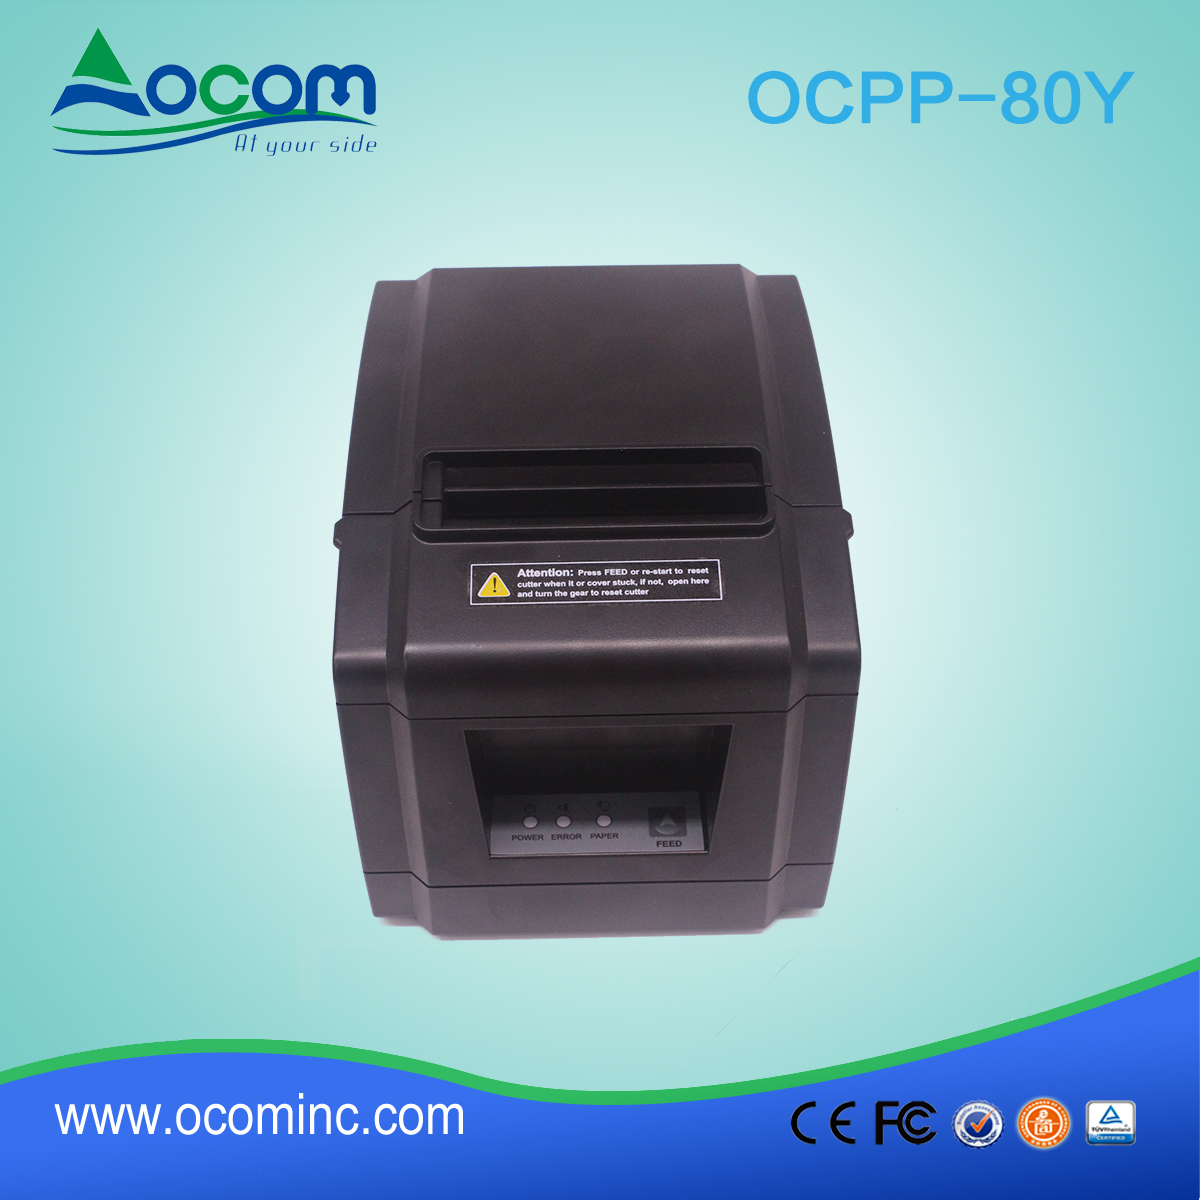 OCPP-80Y-Goedkope 80mm POS-ontvangst thermische printer met autosnijder